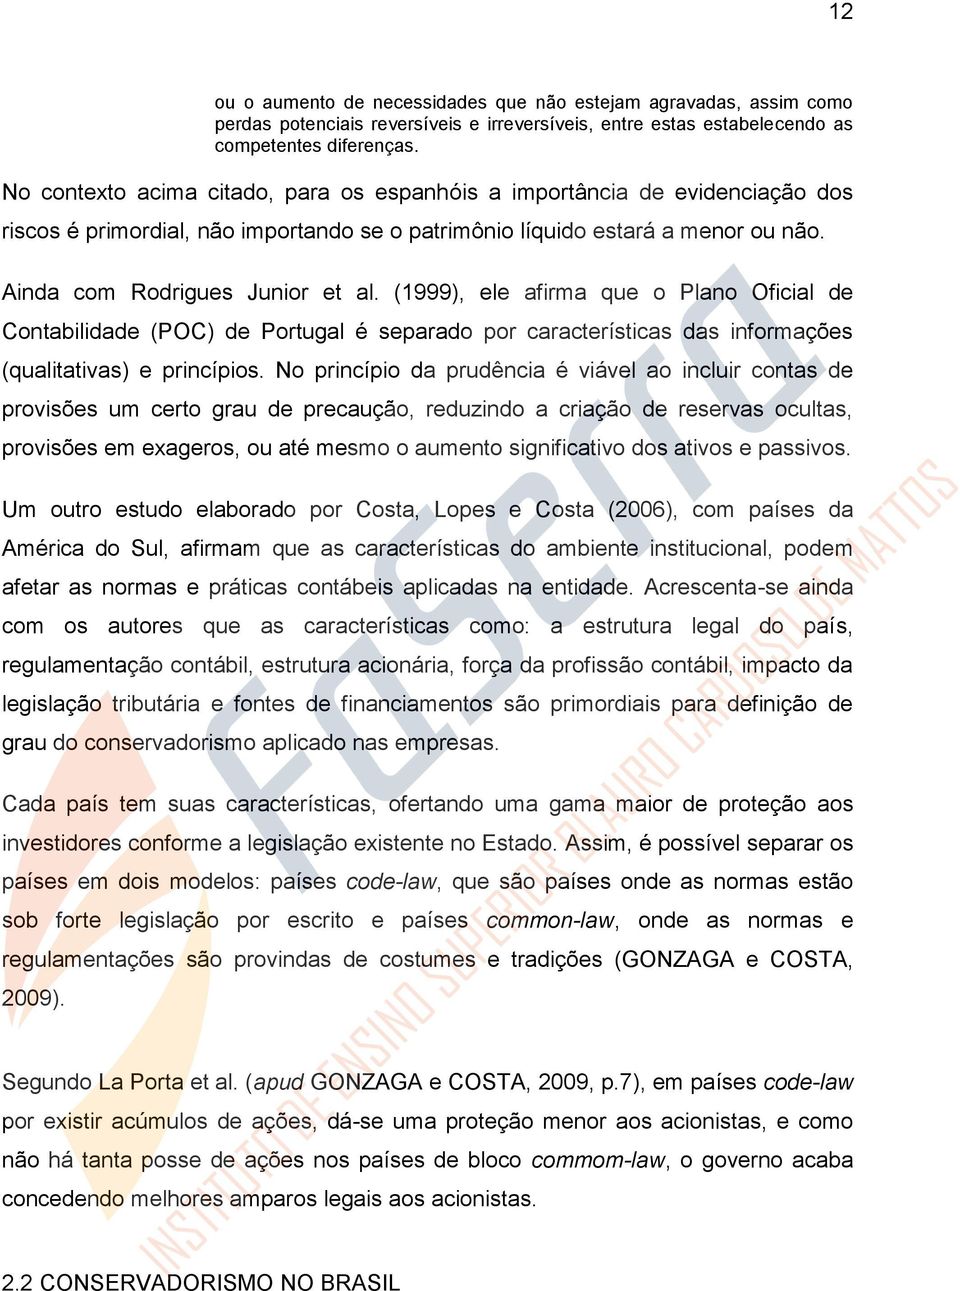 (1999), ele afirma que o Plano Oficial de Contabilidade (POC) de Portugal é separado por características das informações (qualitativas) e princípios.